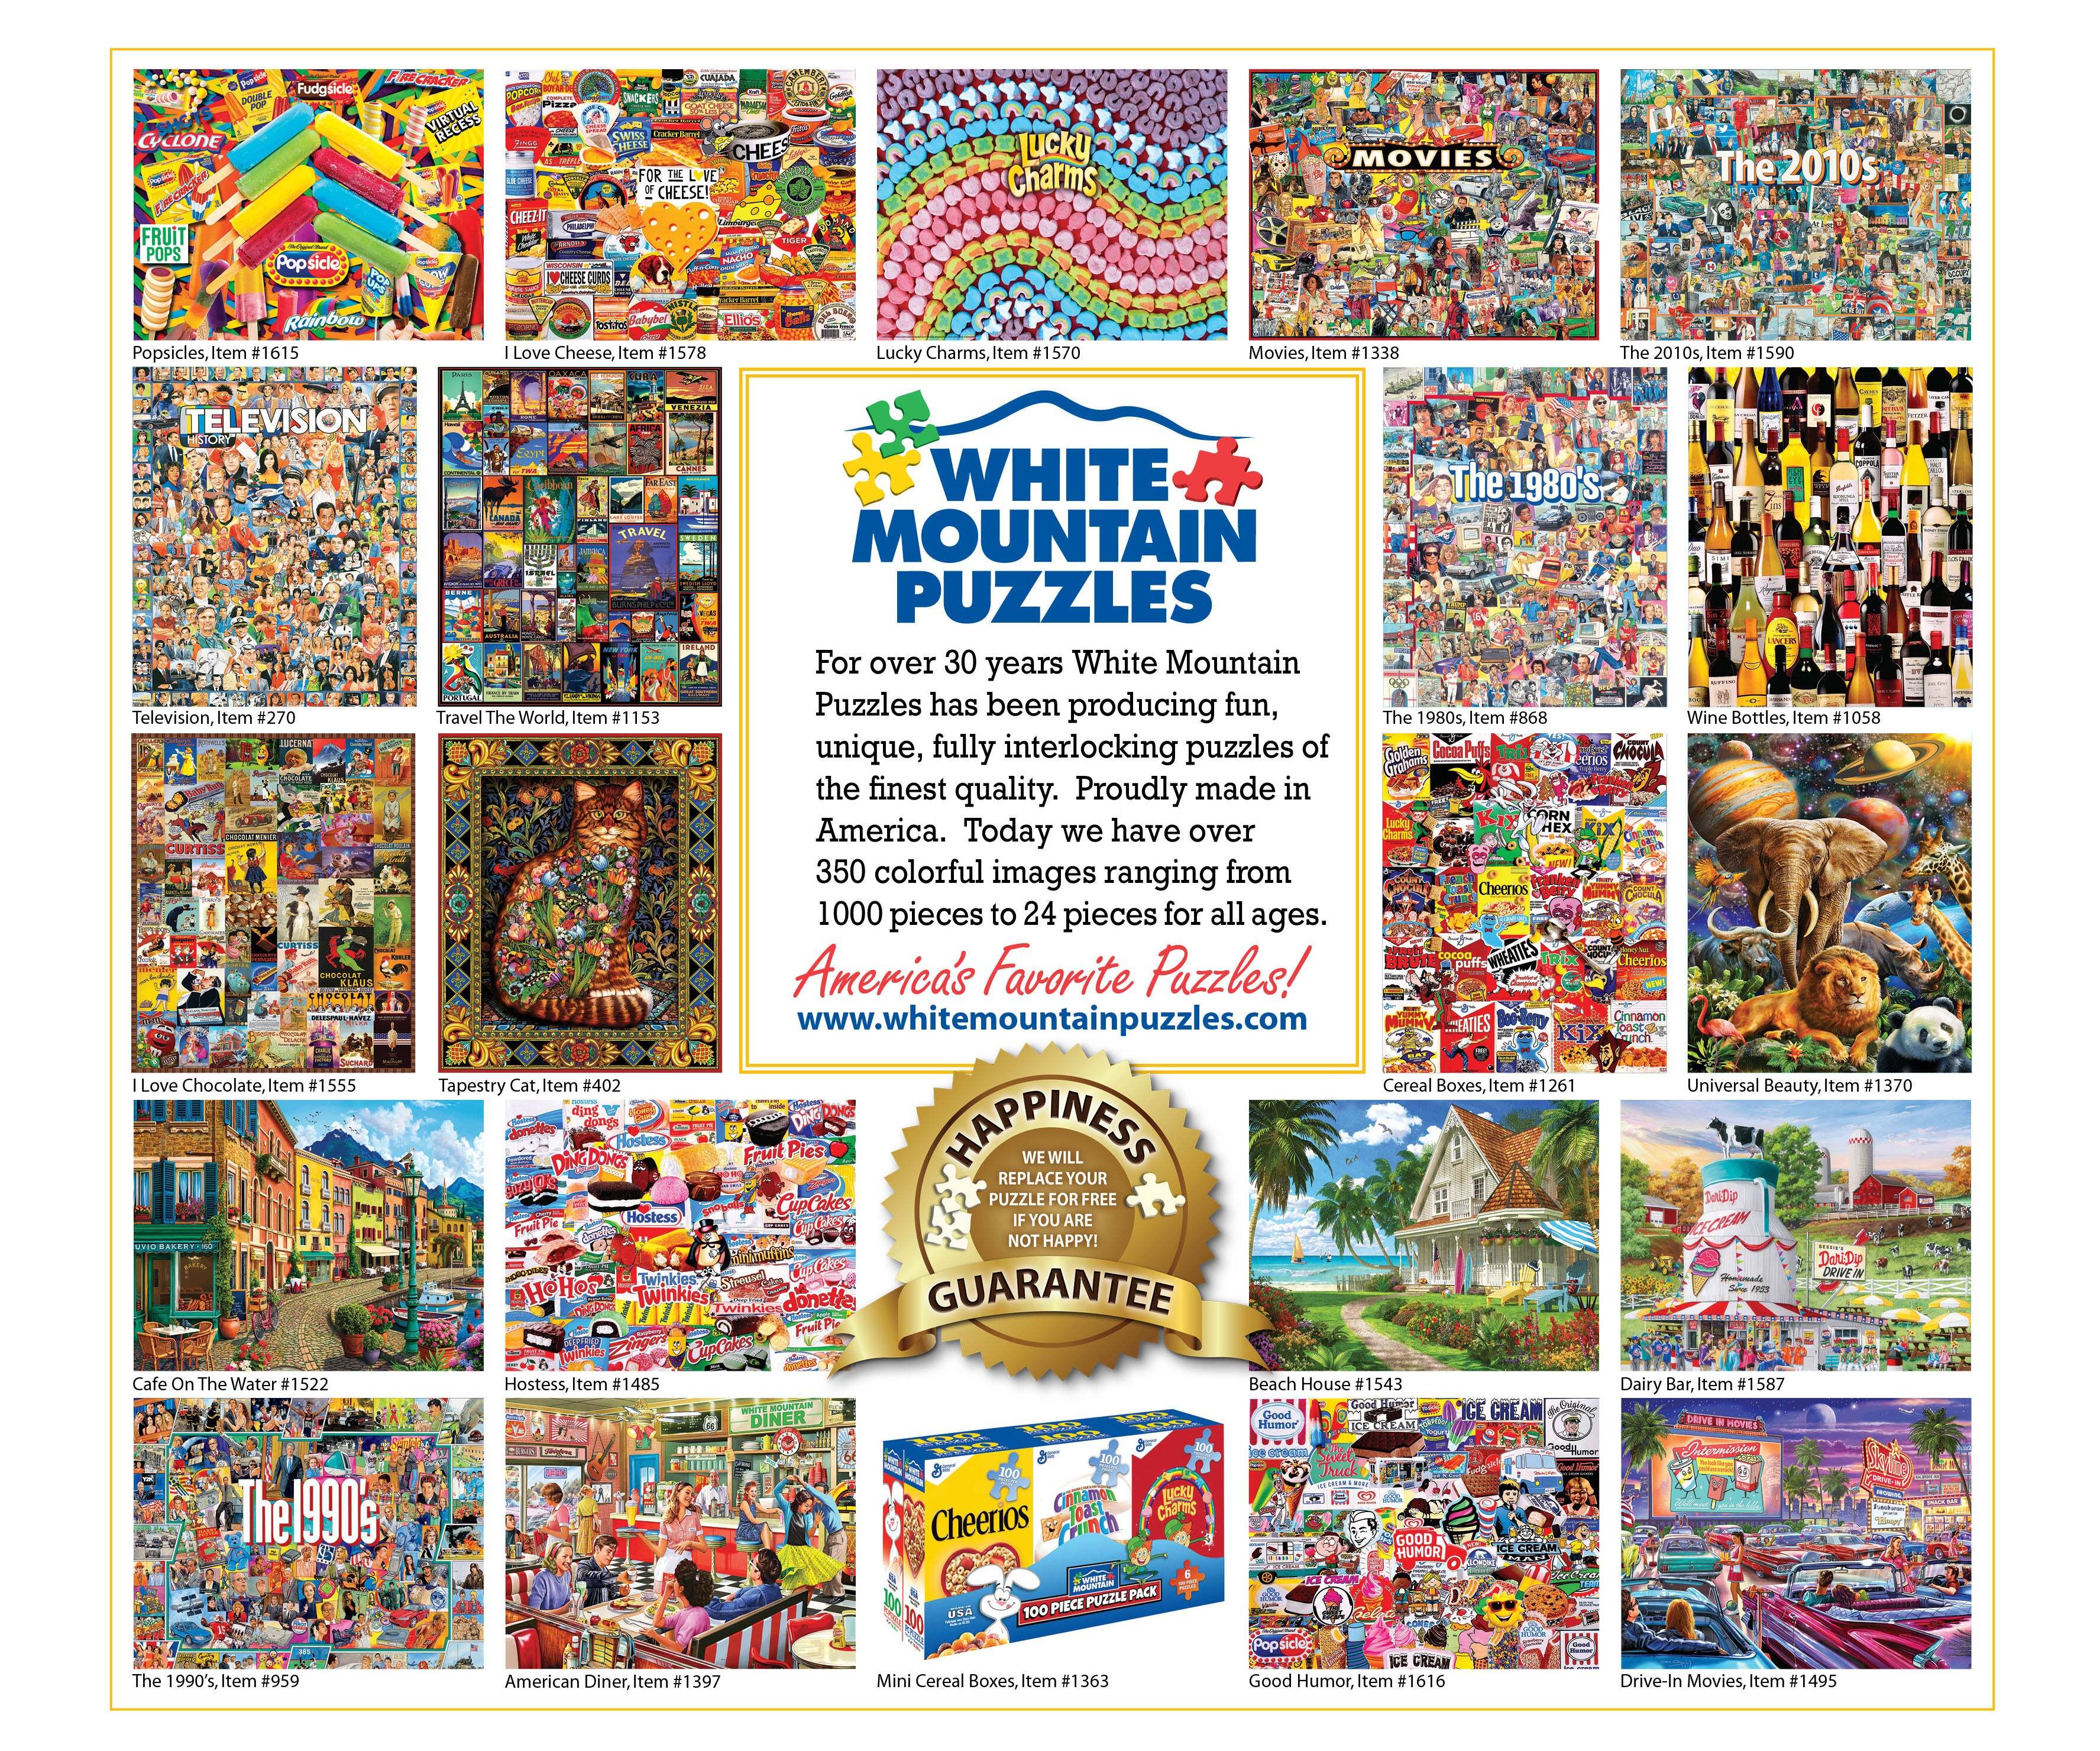 Best Pictures (1644pz) - 1000 Piece Jigsaw Puzzle